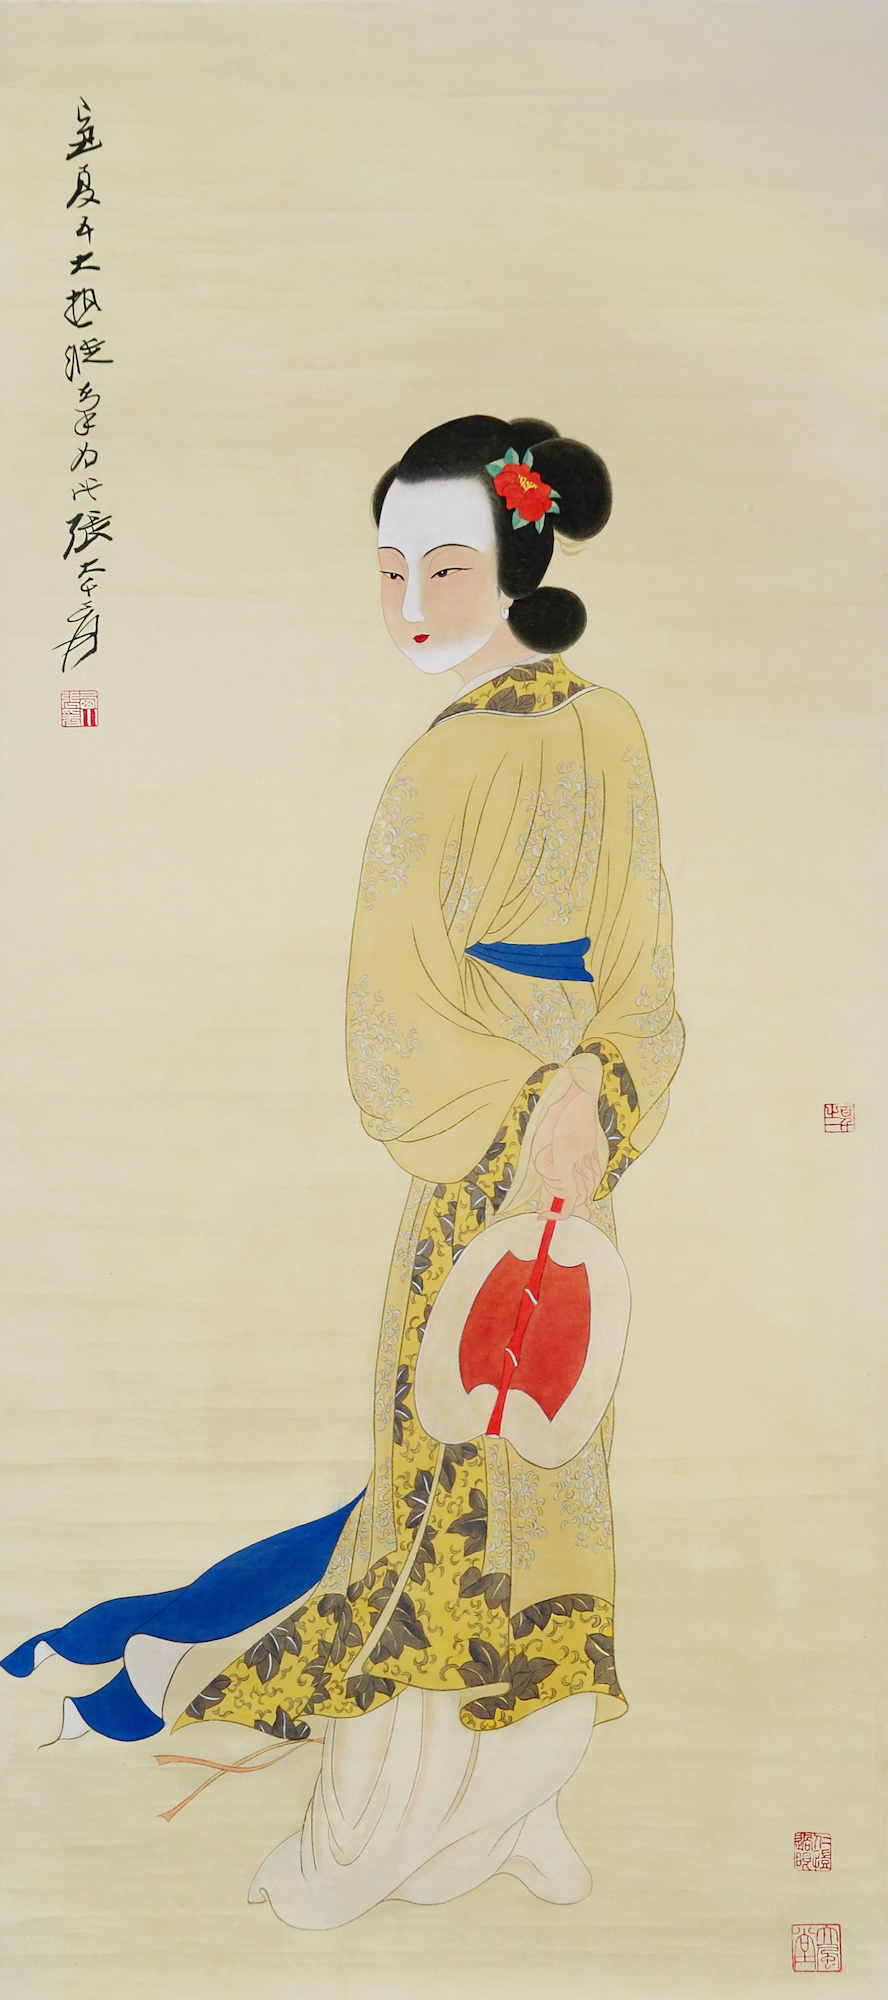 Lady With Fan, Zhang Daqian, 1949. Gianguan Auctions, June 17th, 2019.